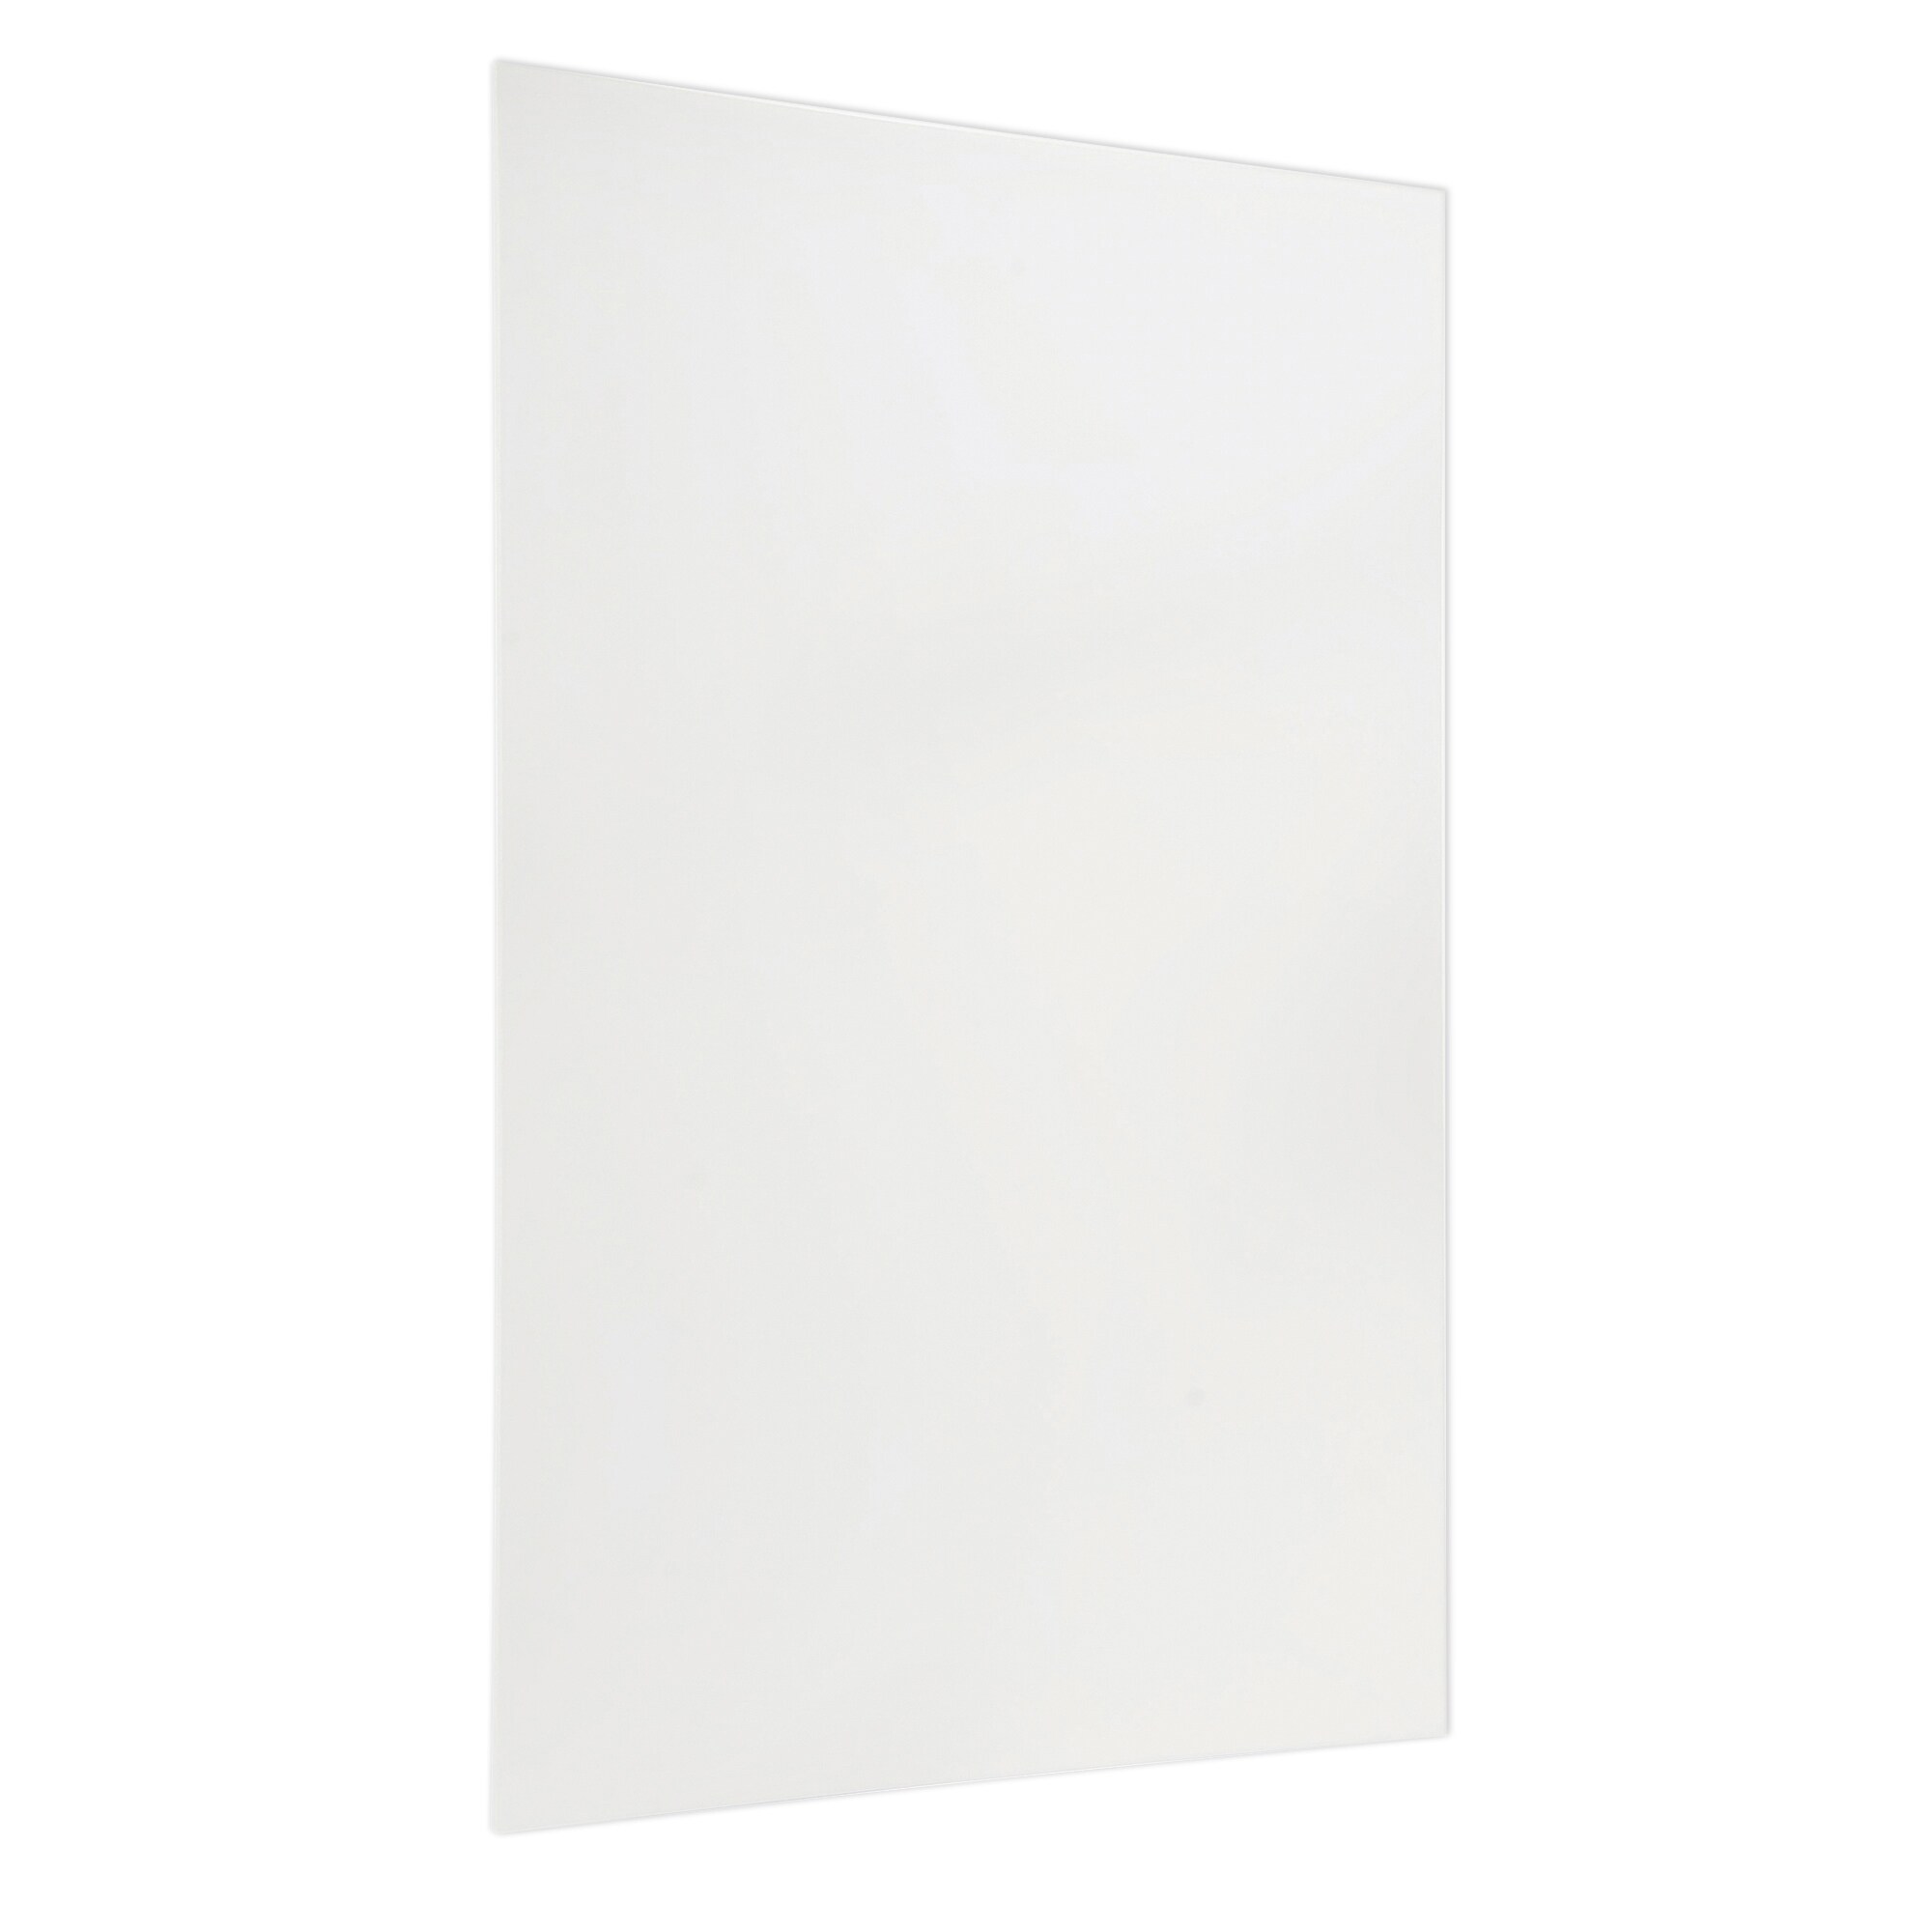 Flipside Foam Board, White, 20 In x 30 In, Pack of 10 at